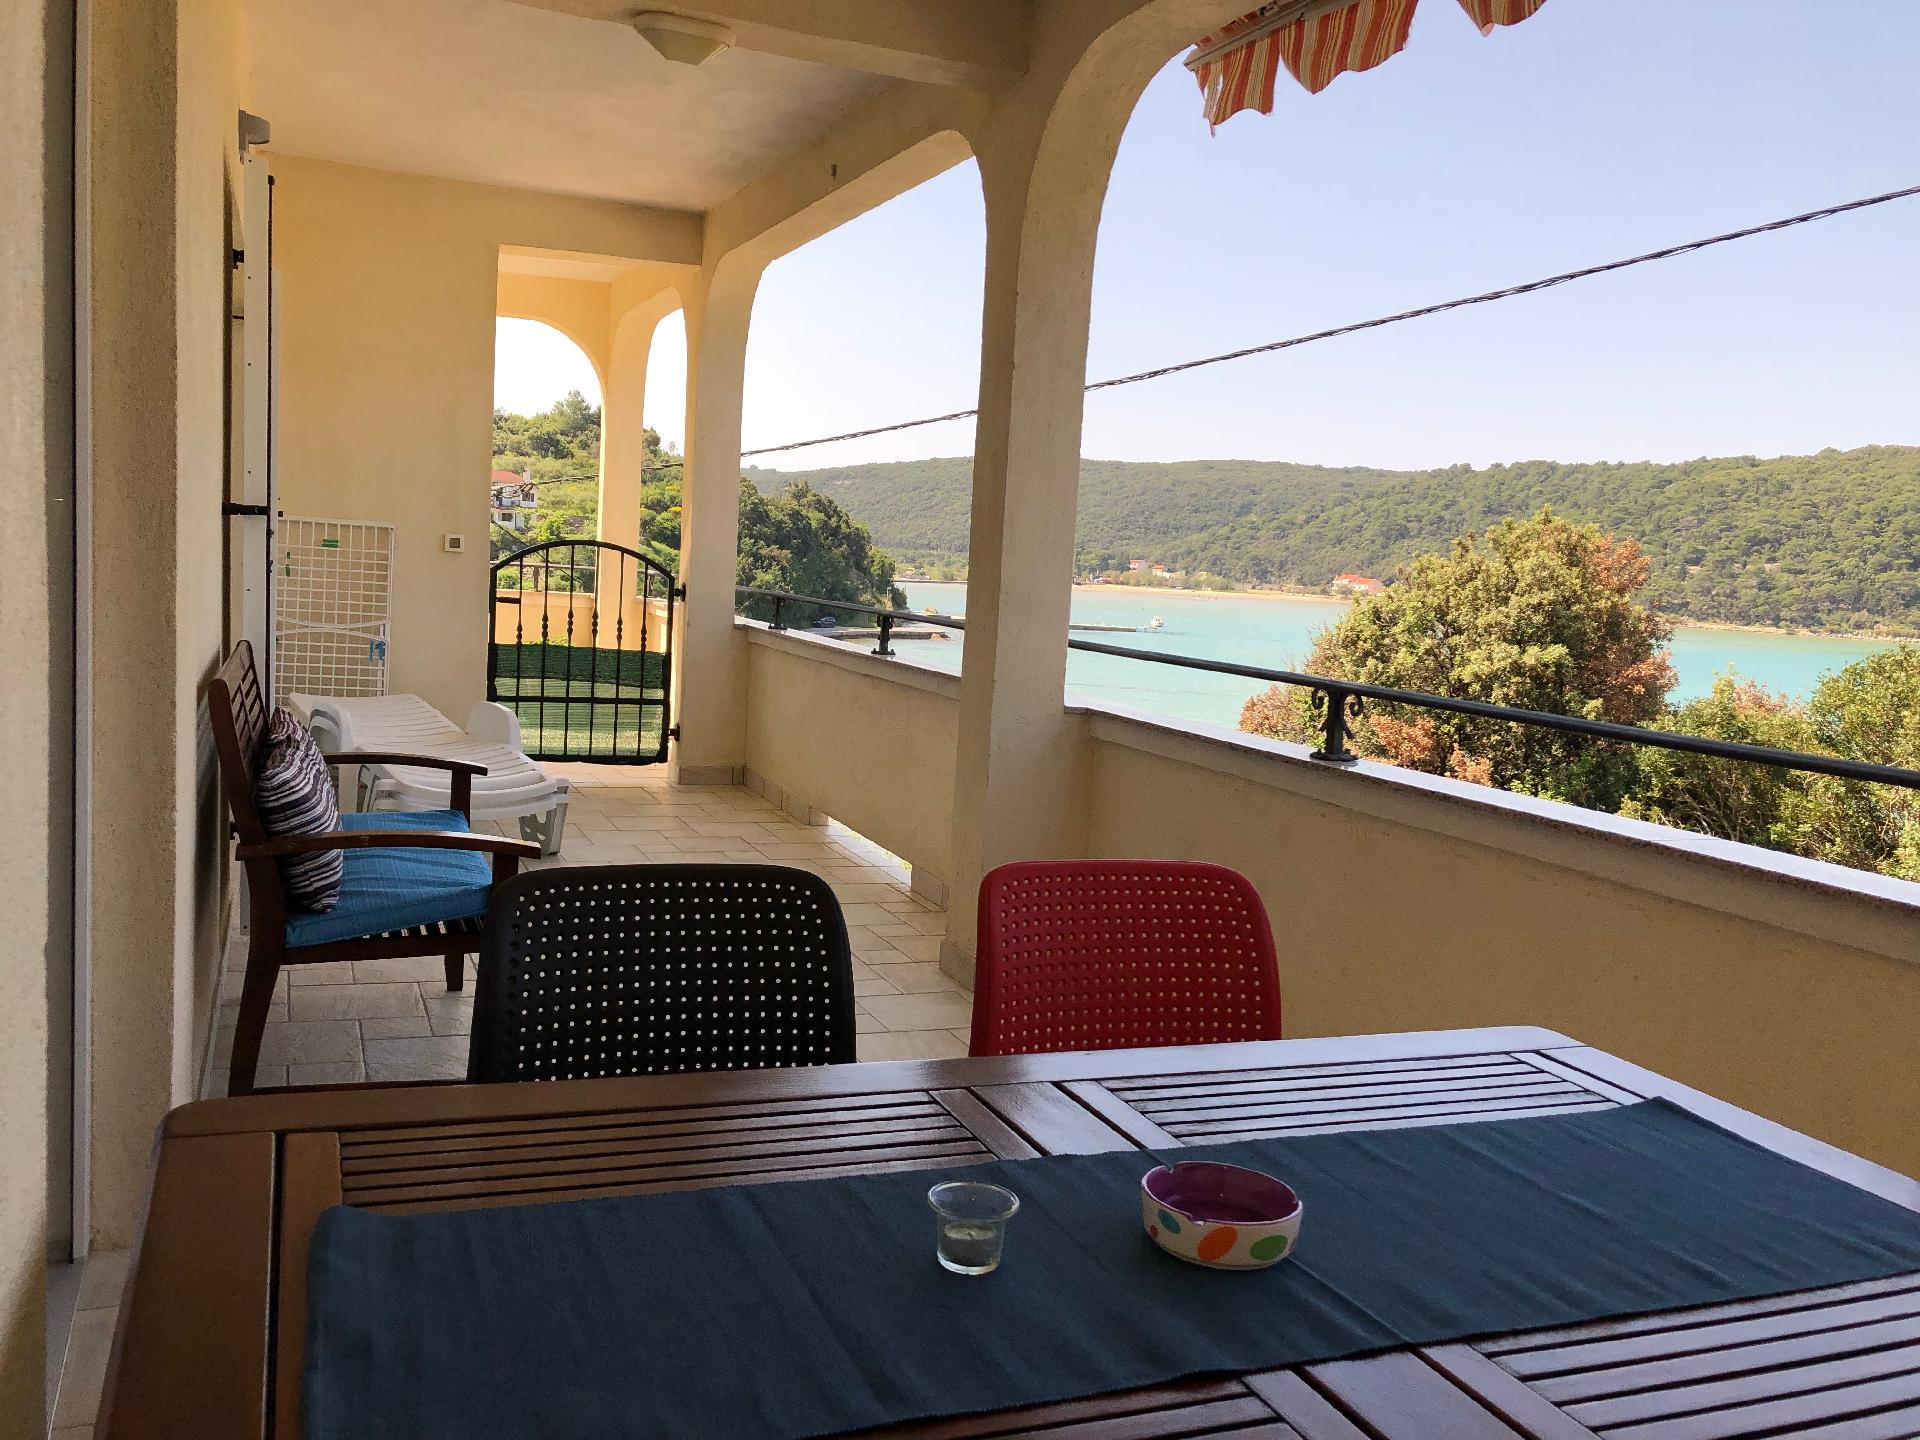 Geräumig ausgelegte Ferienwohnung in der erst Ferienhaus  kroatische Inseln